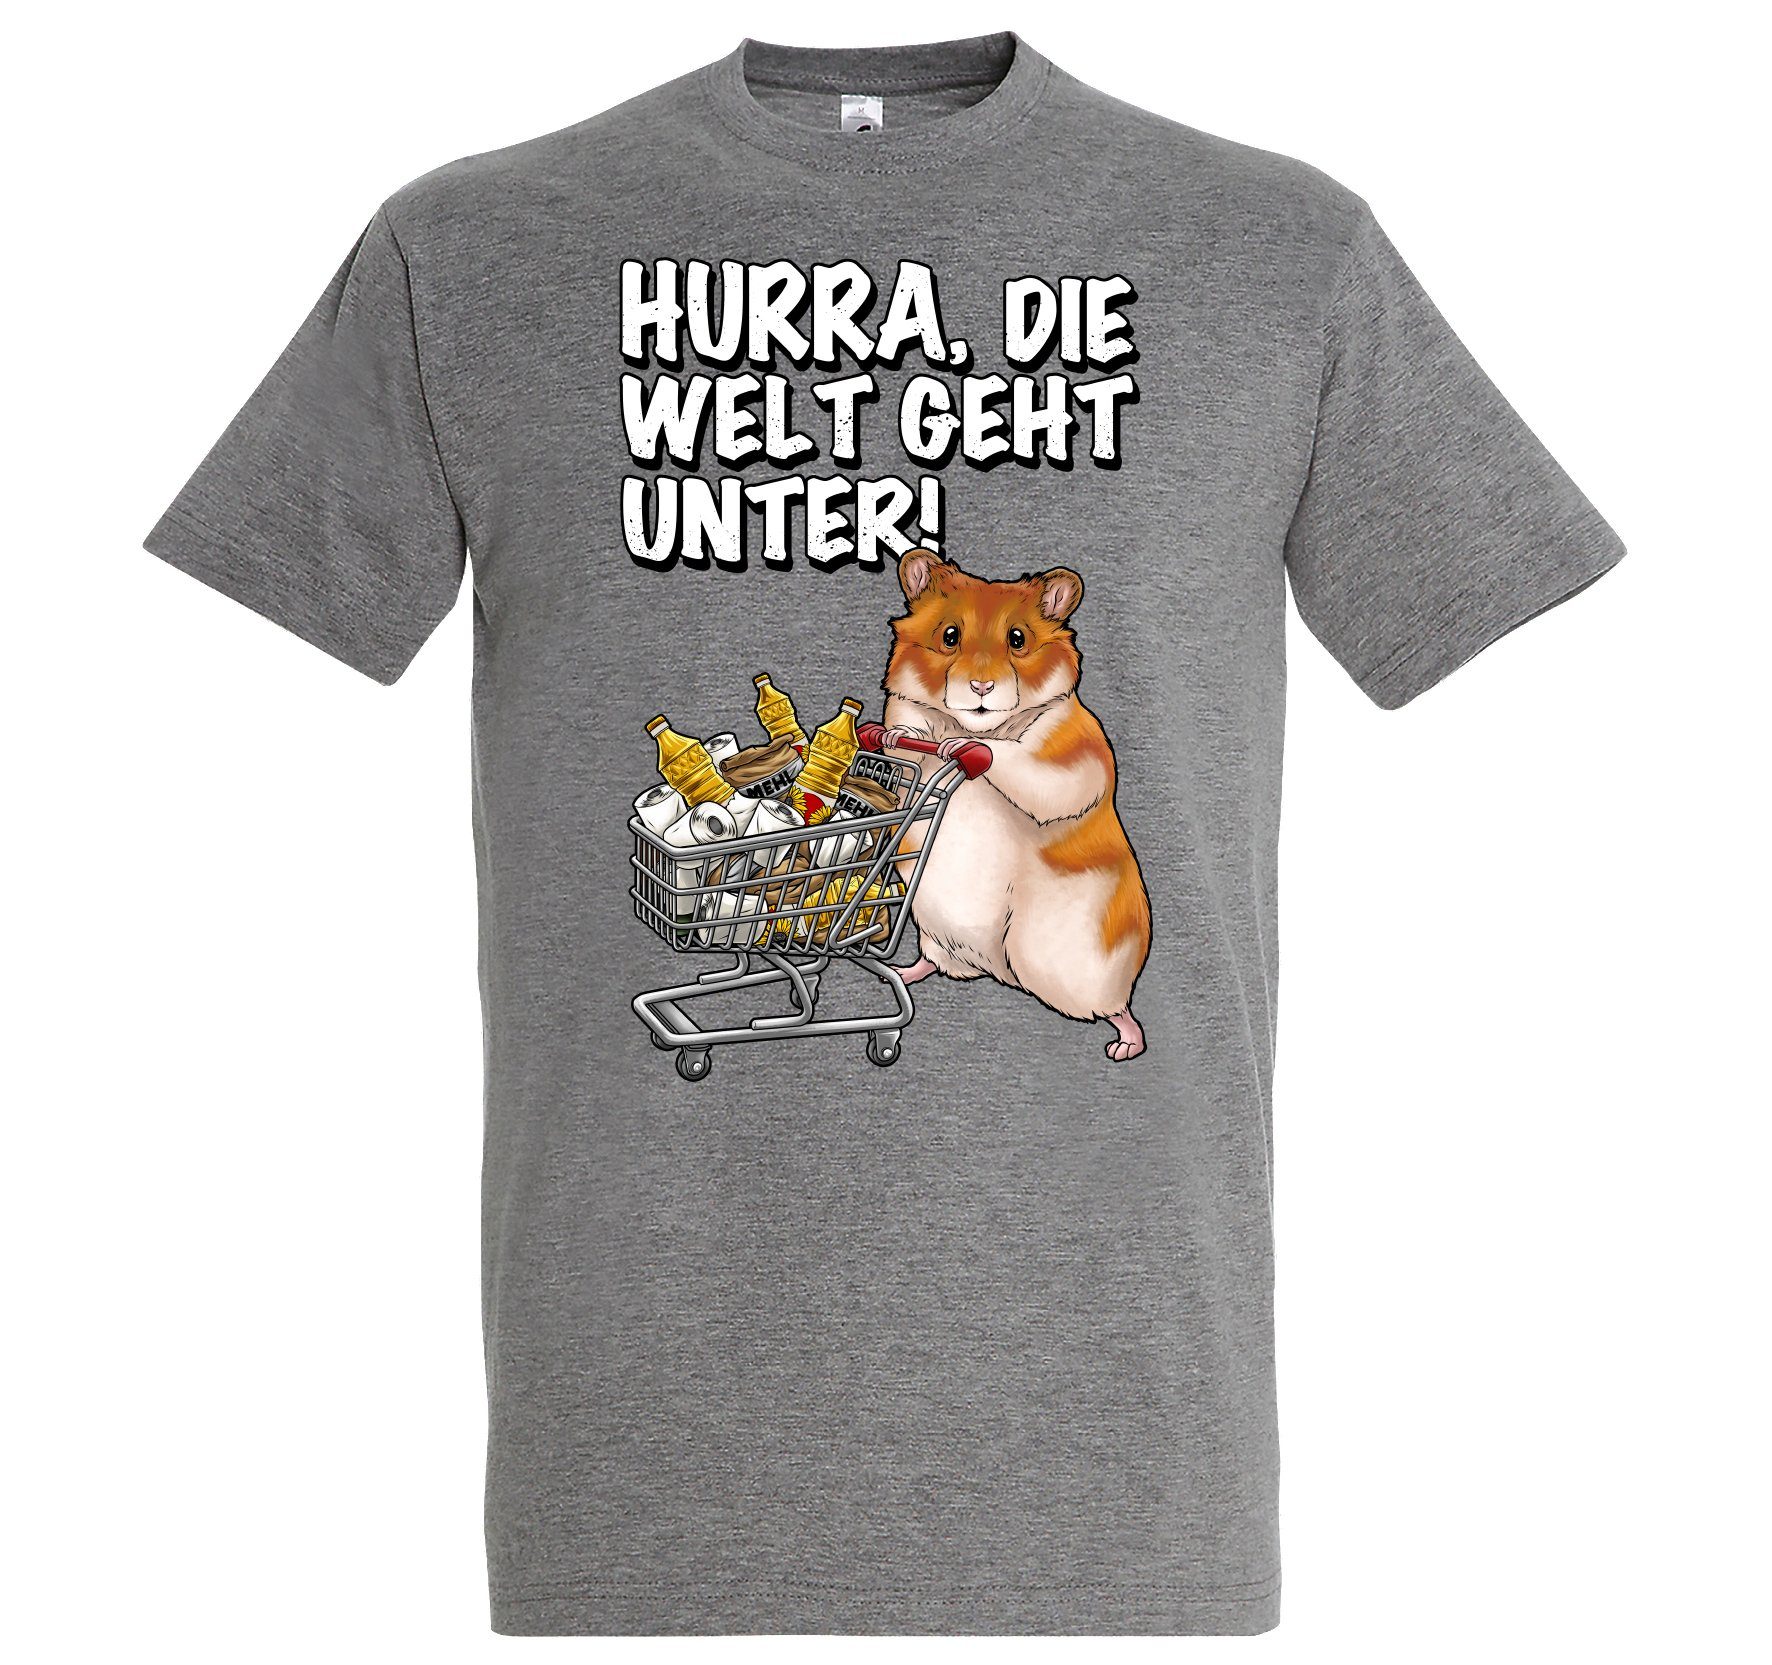 mit Designz Grau Geht Unter Print Spruch Print-Shirt Herren Youth T-Shirt Hurra Welt Die Hamster lustigem